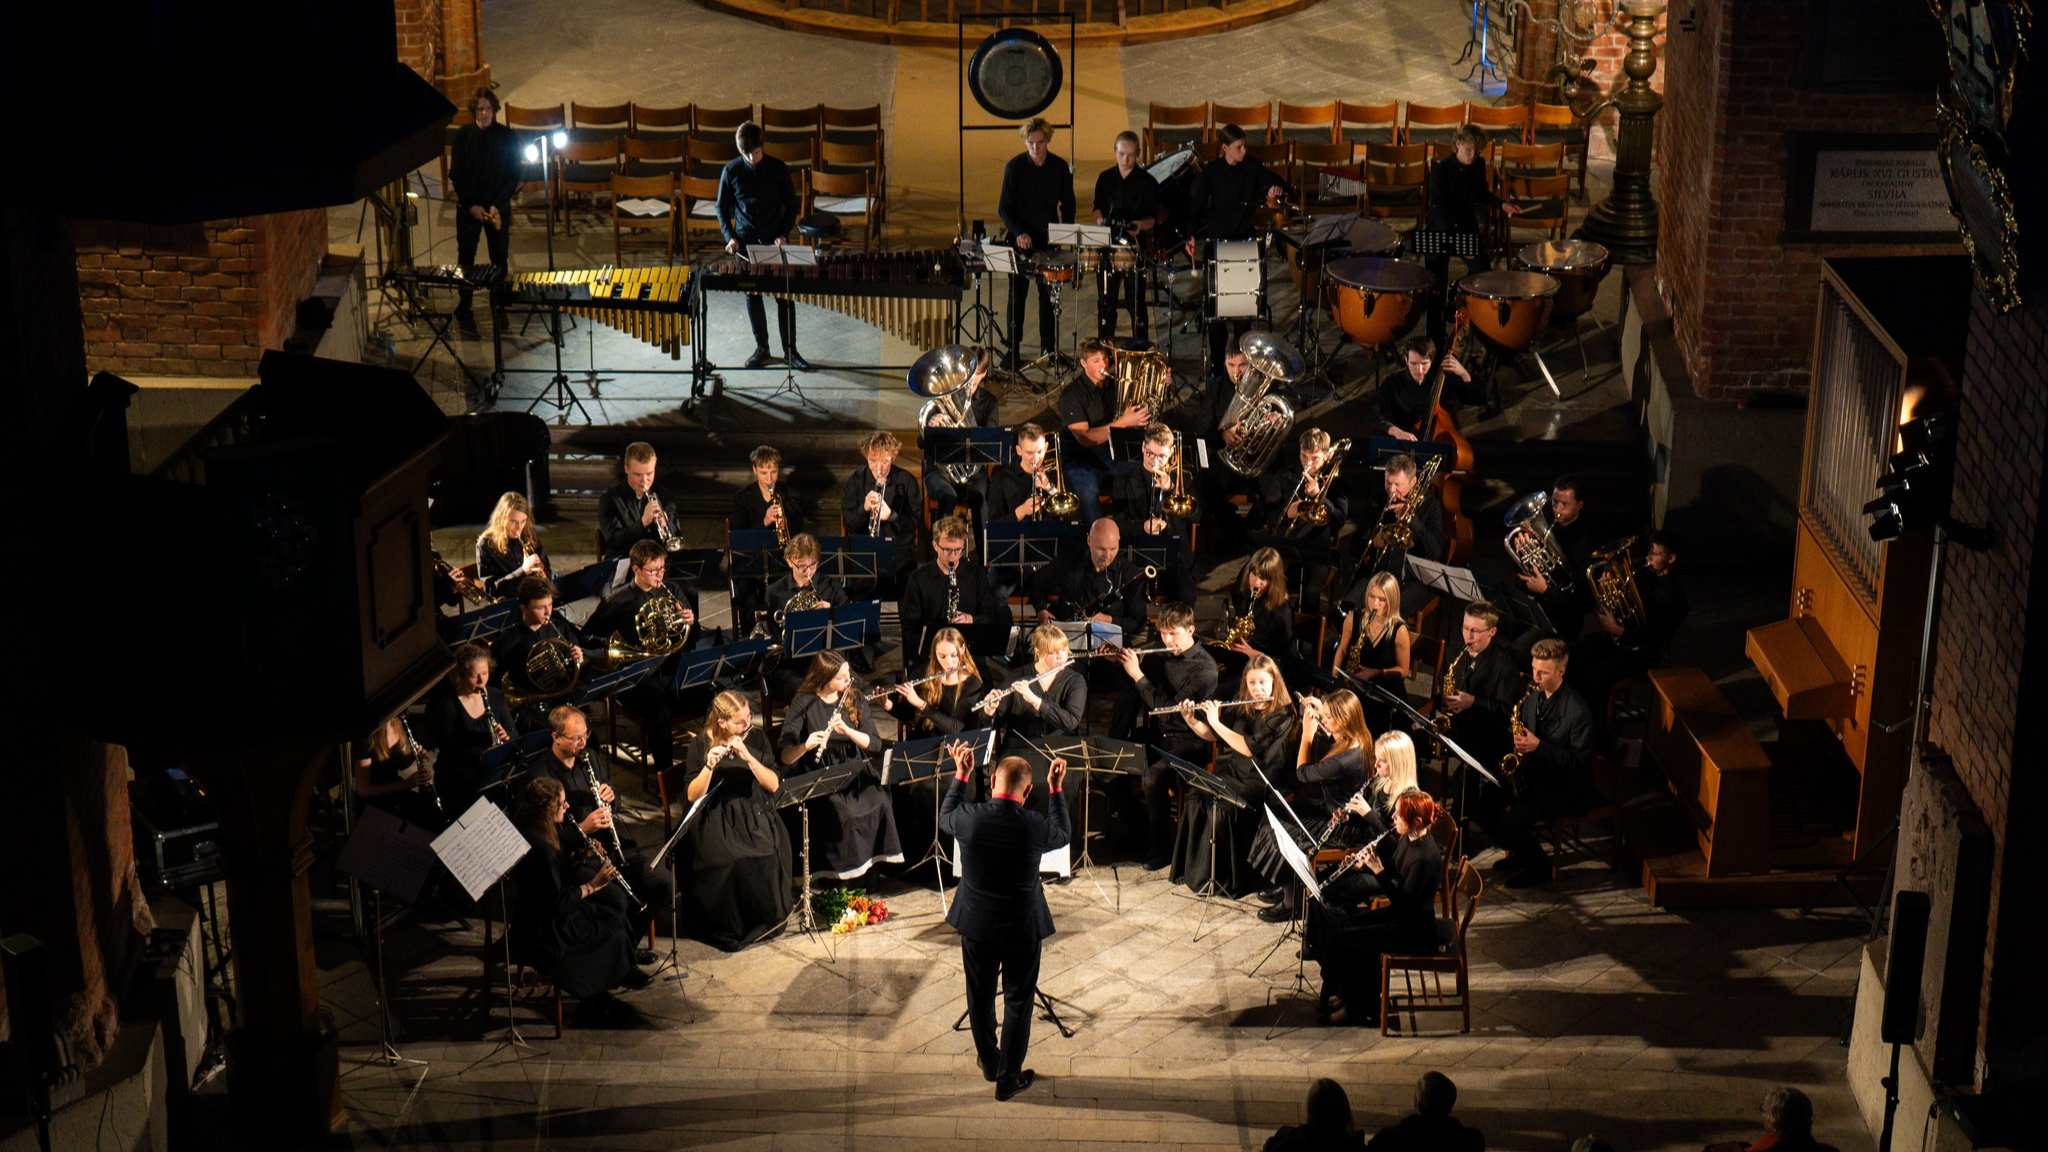 Jāzepa Mediņa Rīgas Mūzikas vidusskolas pūtēju orķestris aicina uz koncertu “Mīlas ekspresis” 